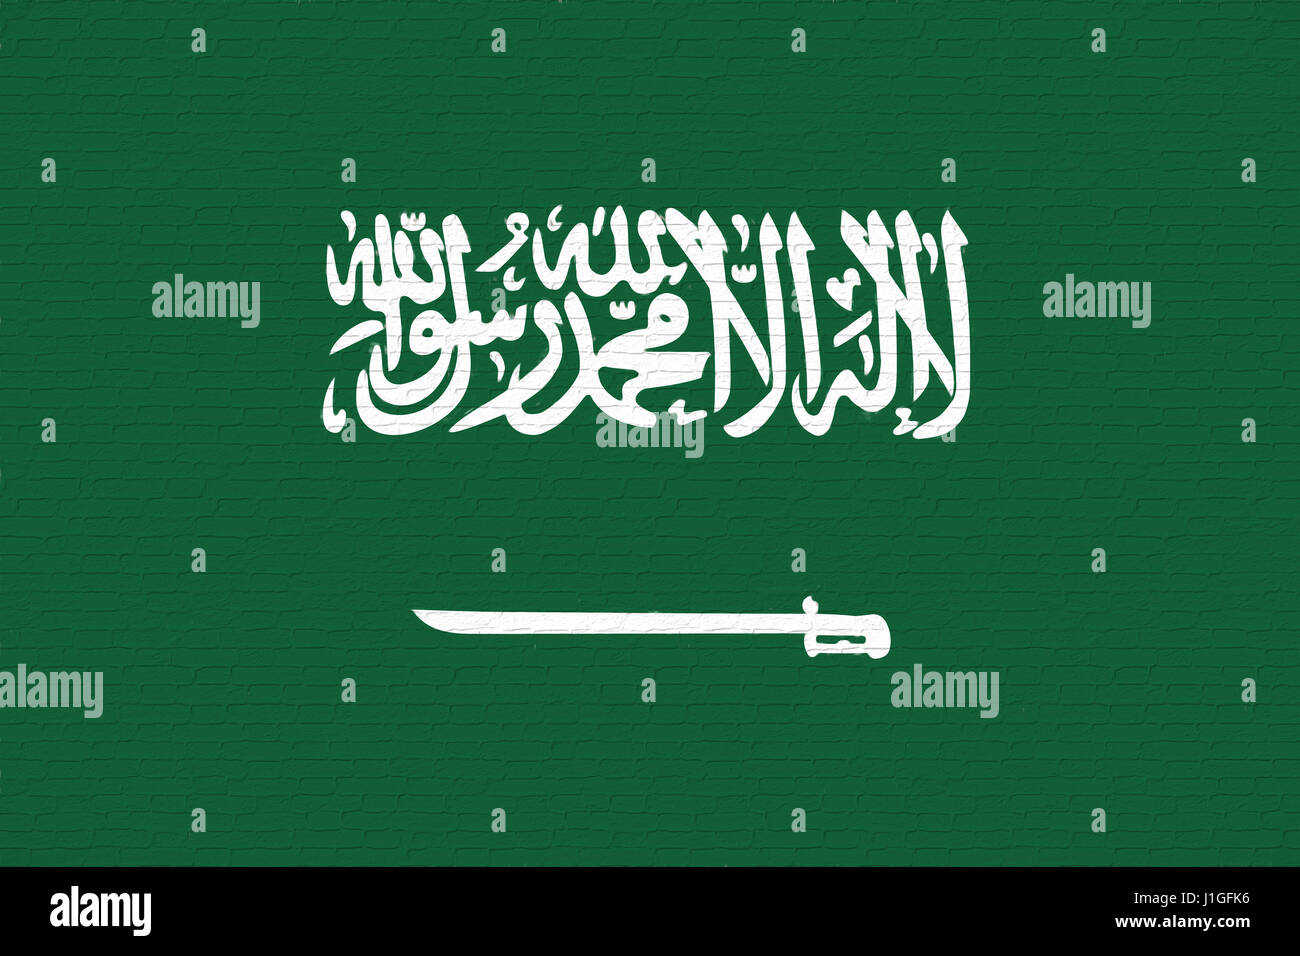 Ilustración de la bandera de Arabia Saudita busca como se ha pintado en la pared. Foto de stock